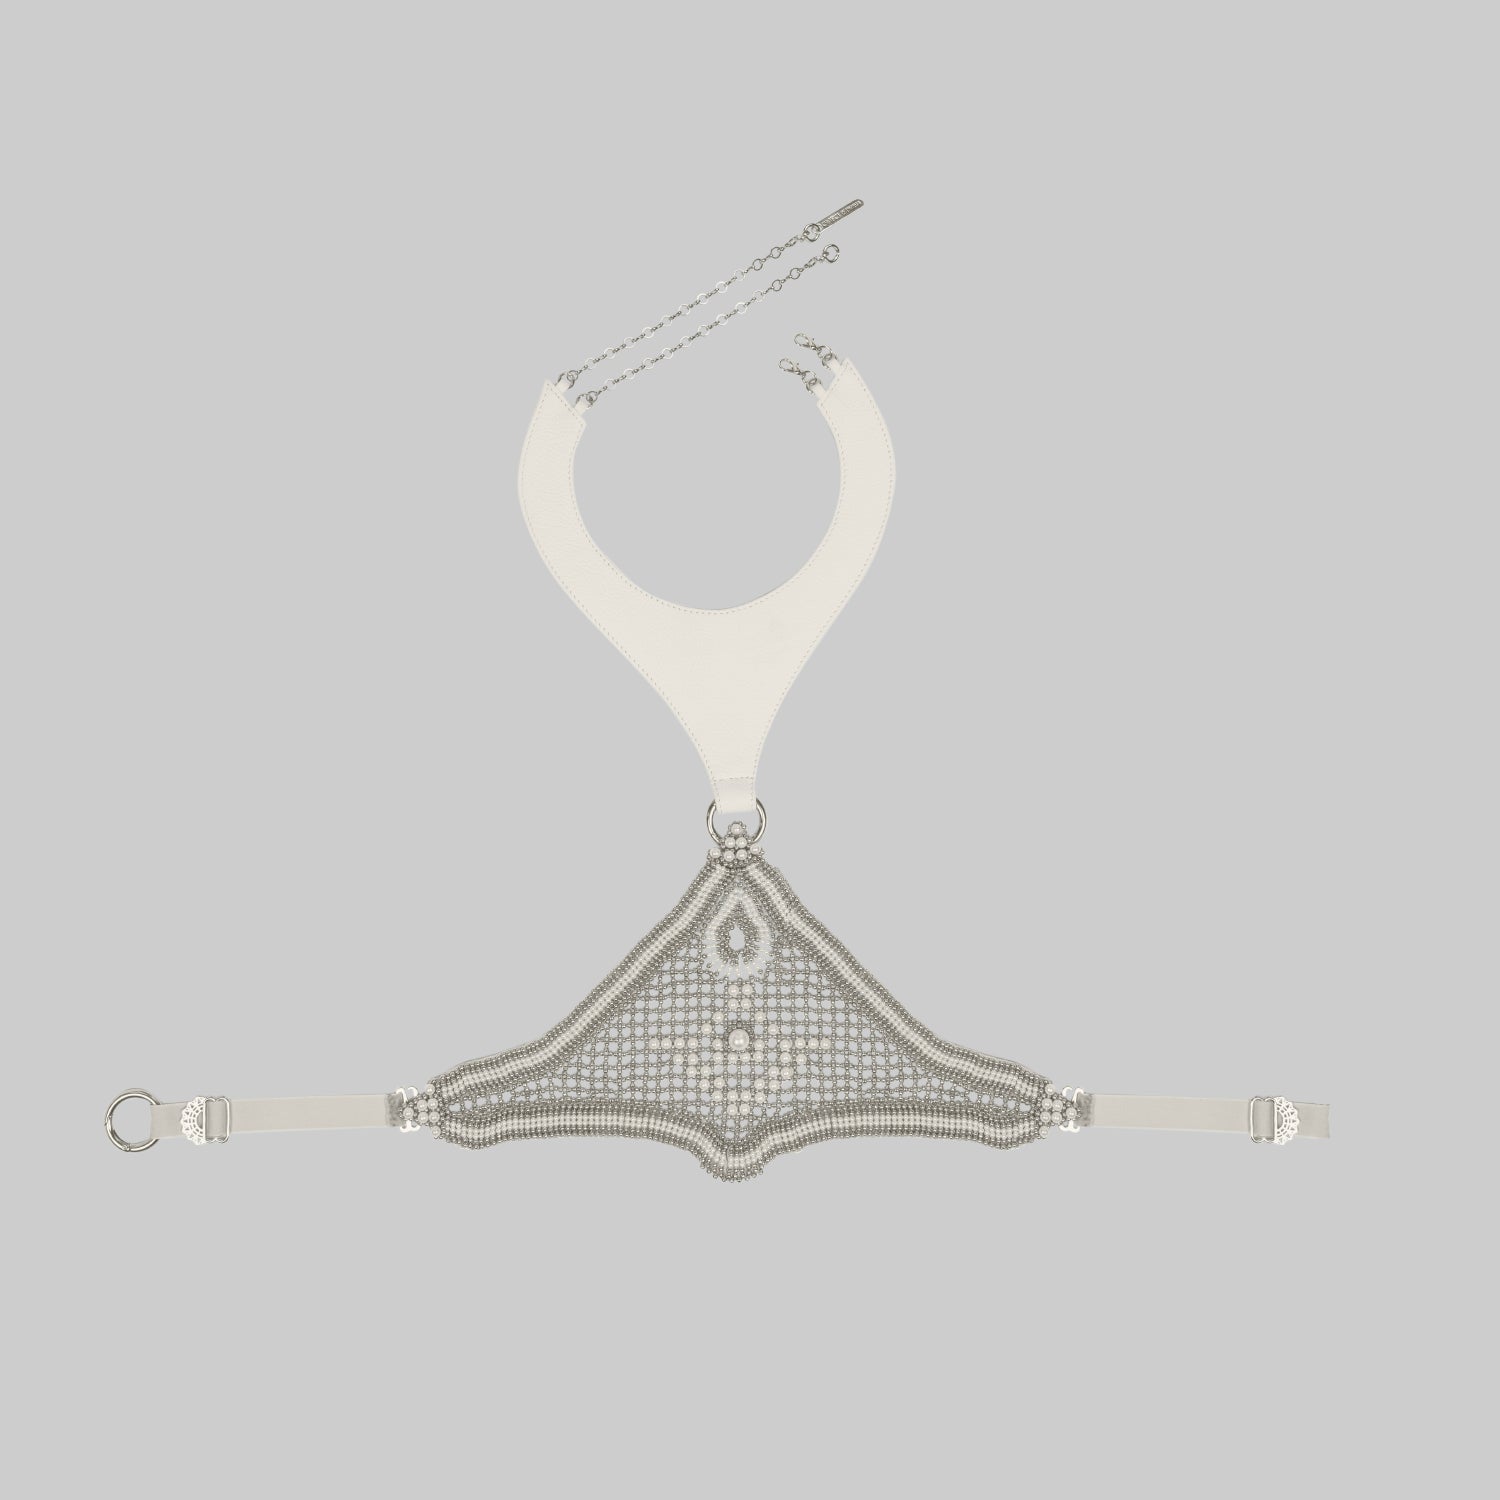 Khutulun Modular Bodice w/Leather in Pearl